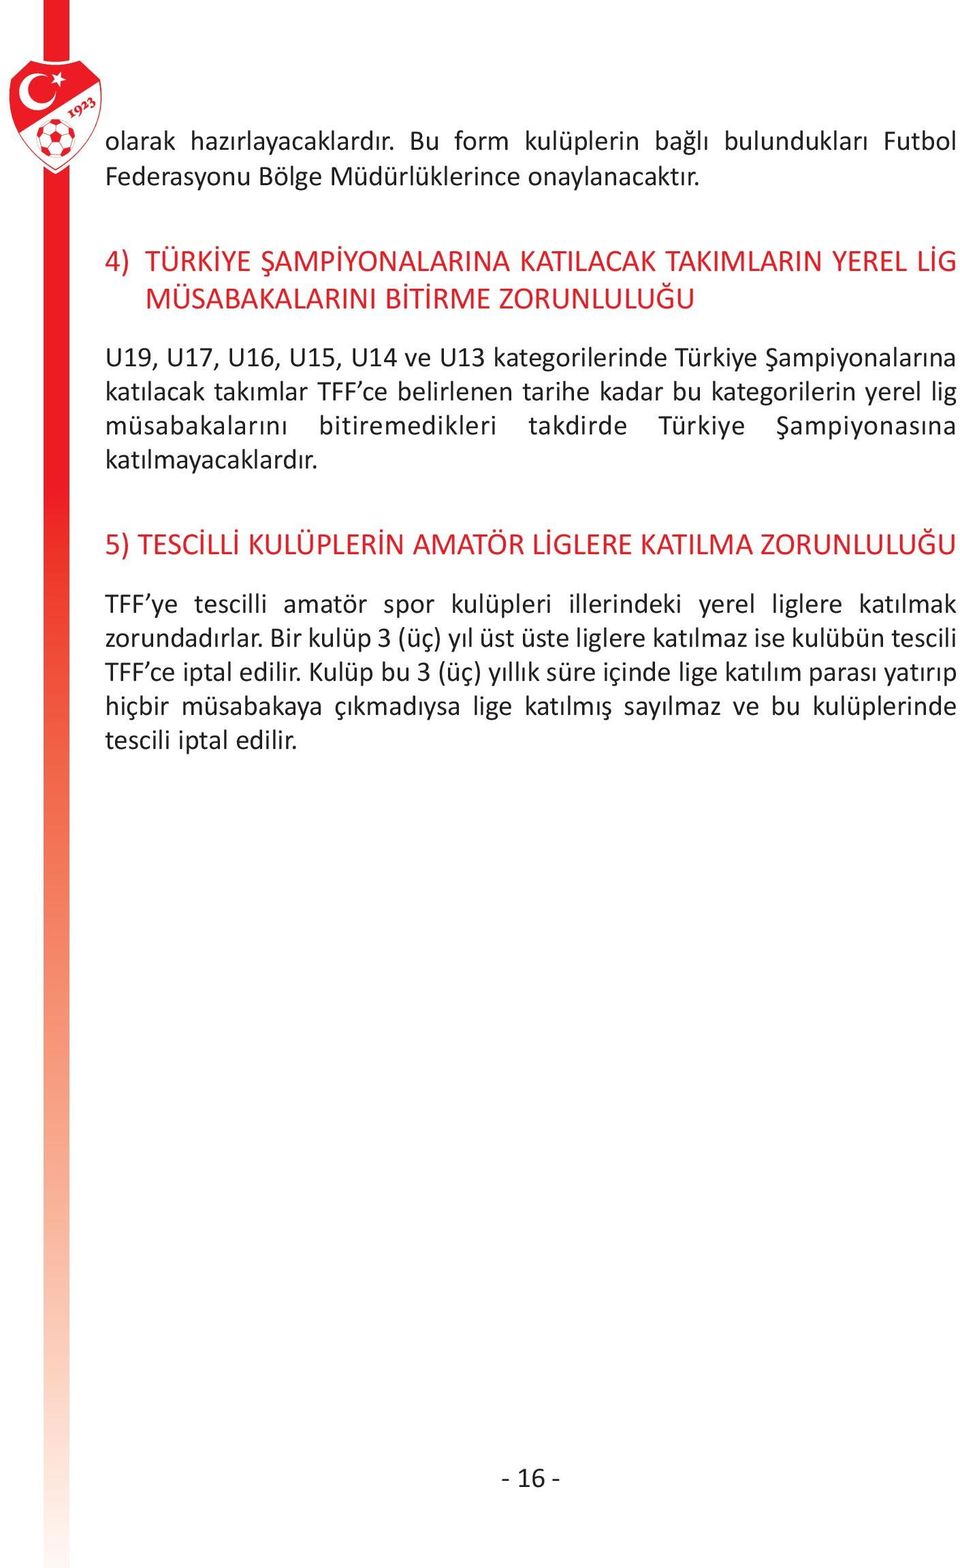 belirlenen tarihe kadar bu kategorilerin yerel lig müsabakalarını bitiremedikleri takdirde Türkiye Şampiyonasına katılmayacaklardır.